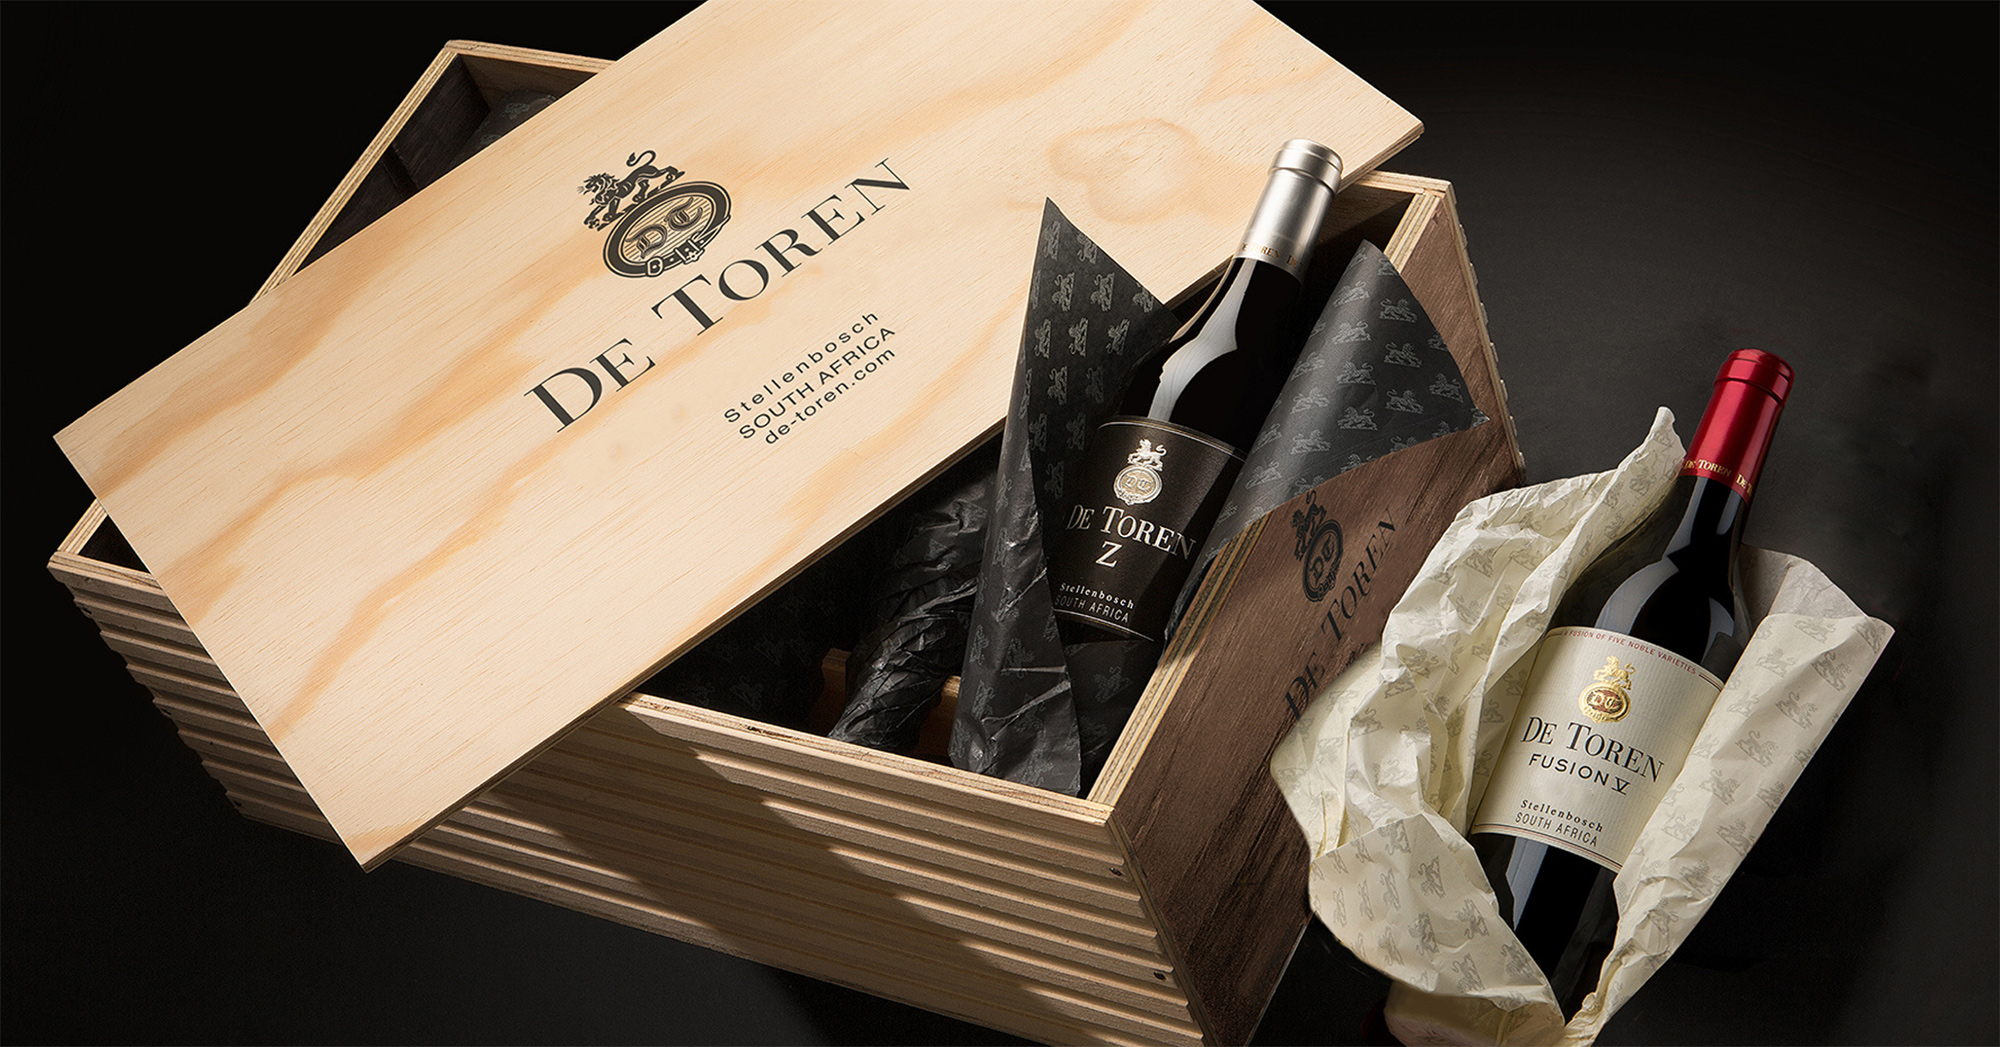 De Toren Experience - wines presented in their exclusive wooden cases